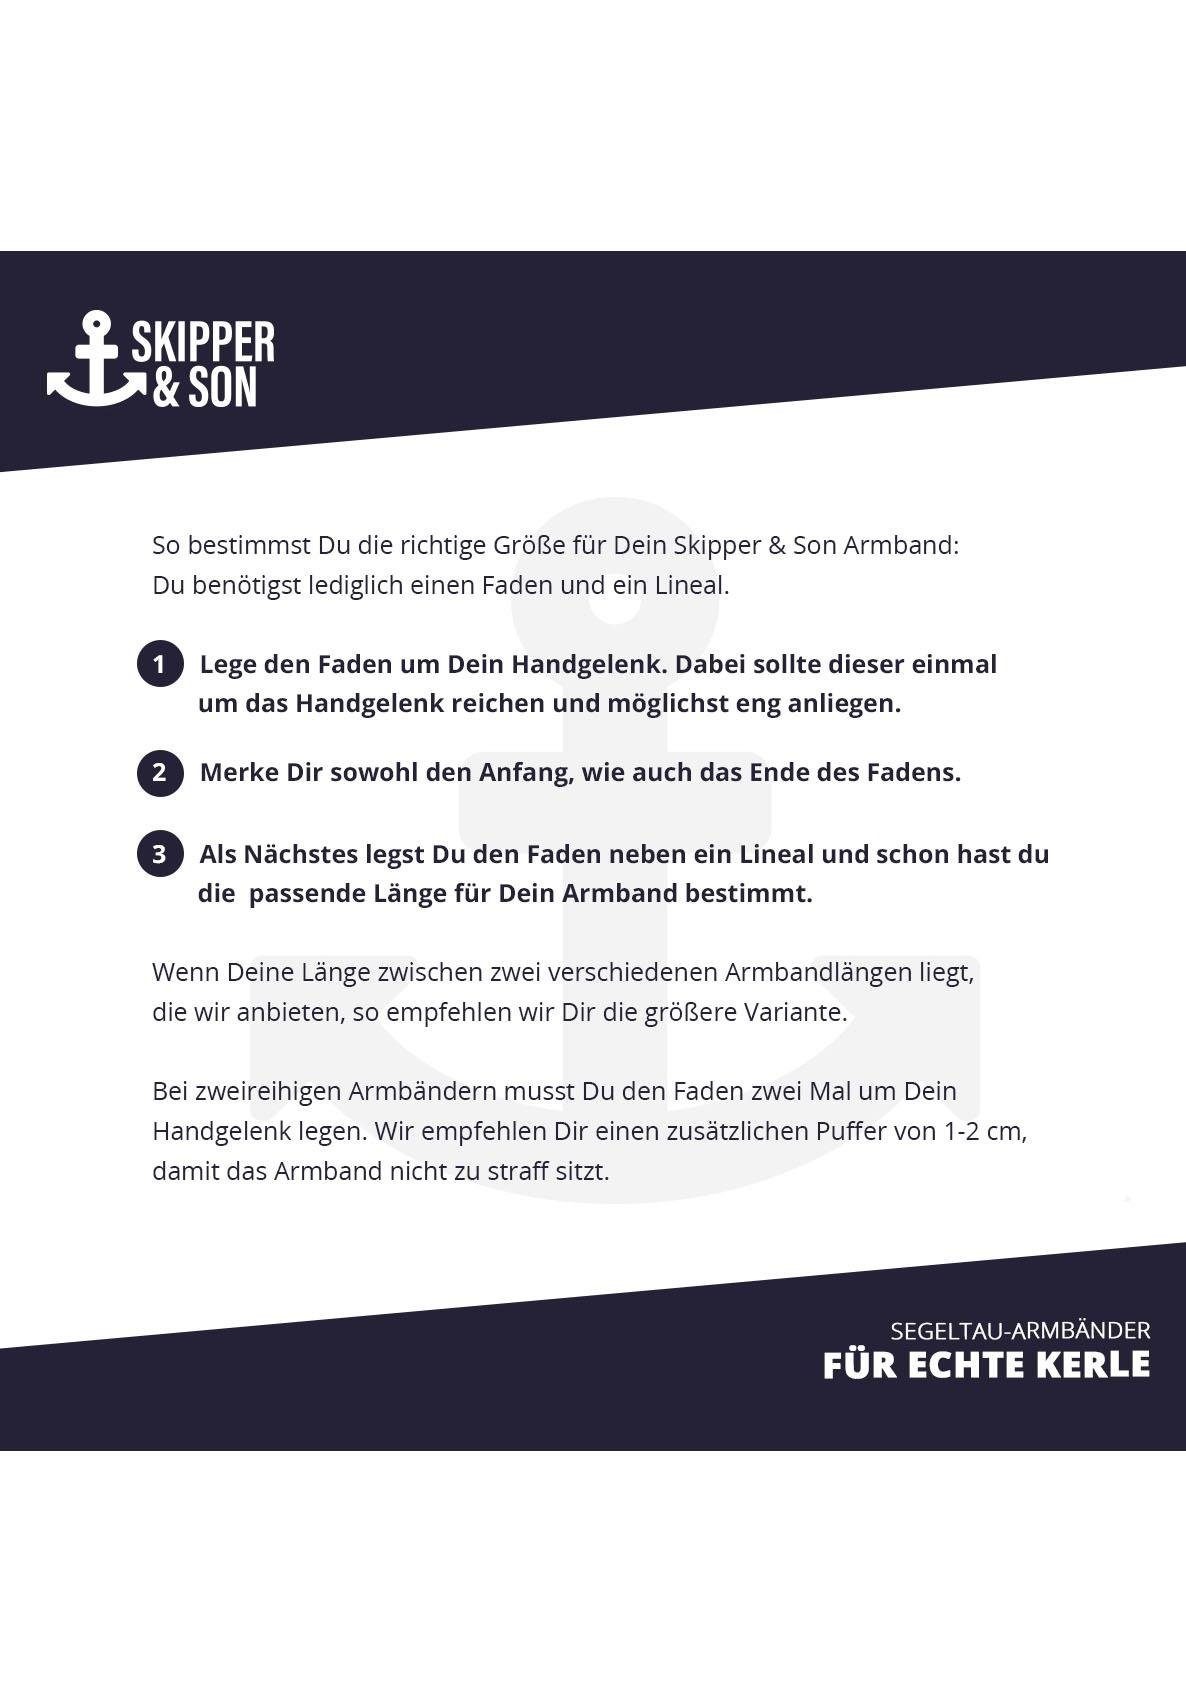 Skipper & Son Herren-Armband Segeltau blau/weiß/schwarz Edelstahl - Herren-Schmuck  Arm-Schmuck geflochten mit Geschenkbox : Skipper & Son: : Fashion